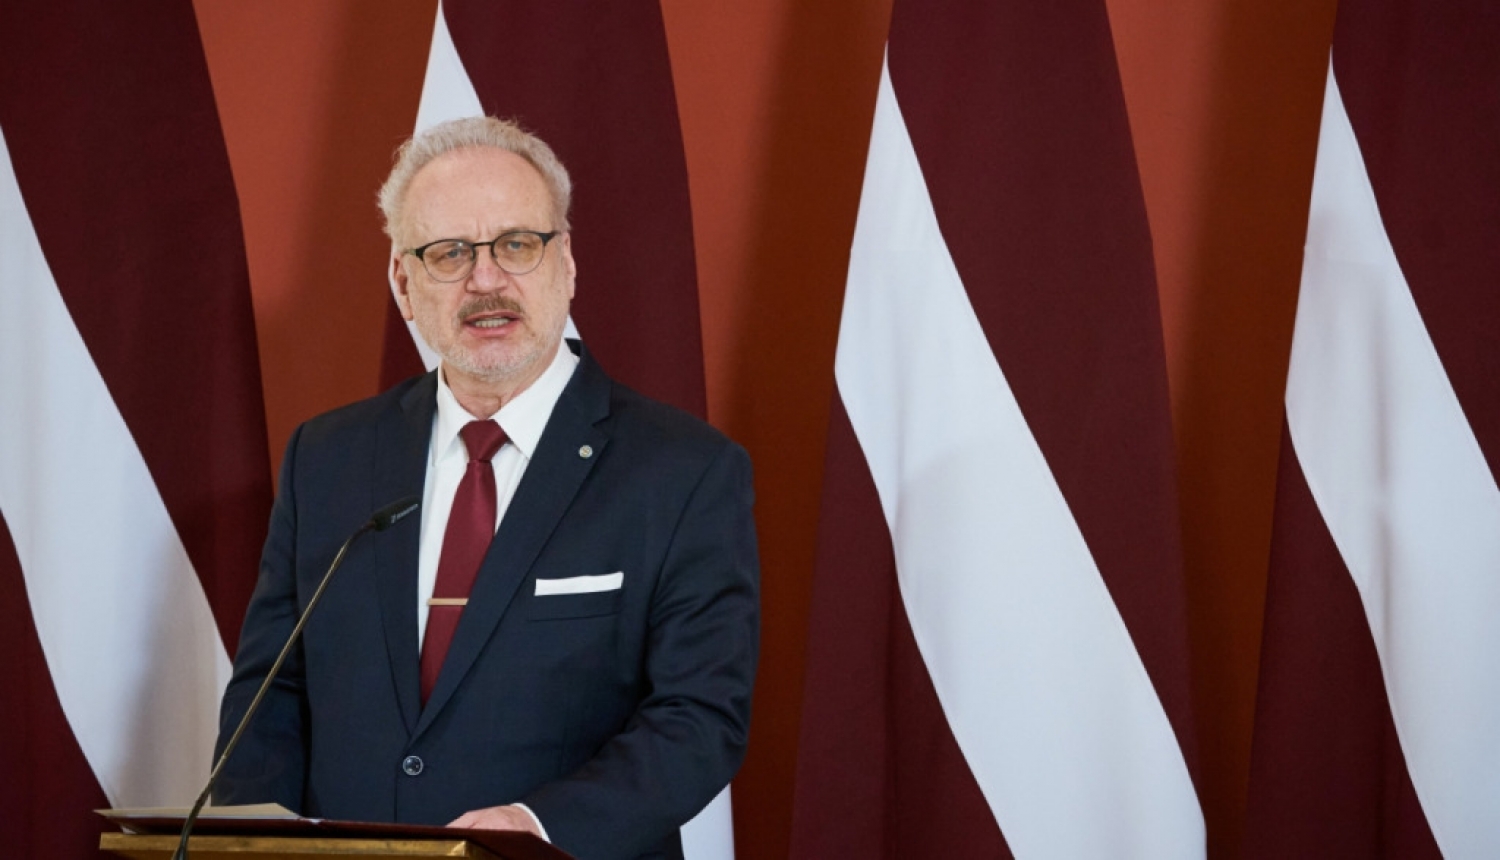 Valsts prezidents uzrunās Latgales kongresu Rēzeknē un apmeklēs Ludzu